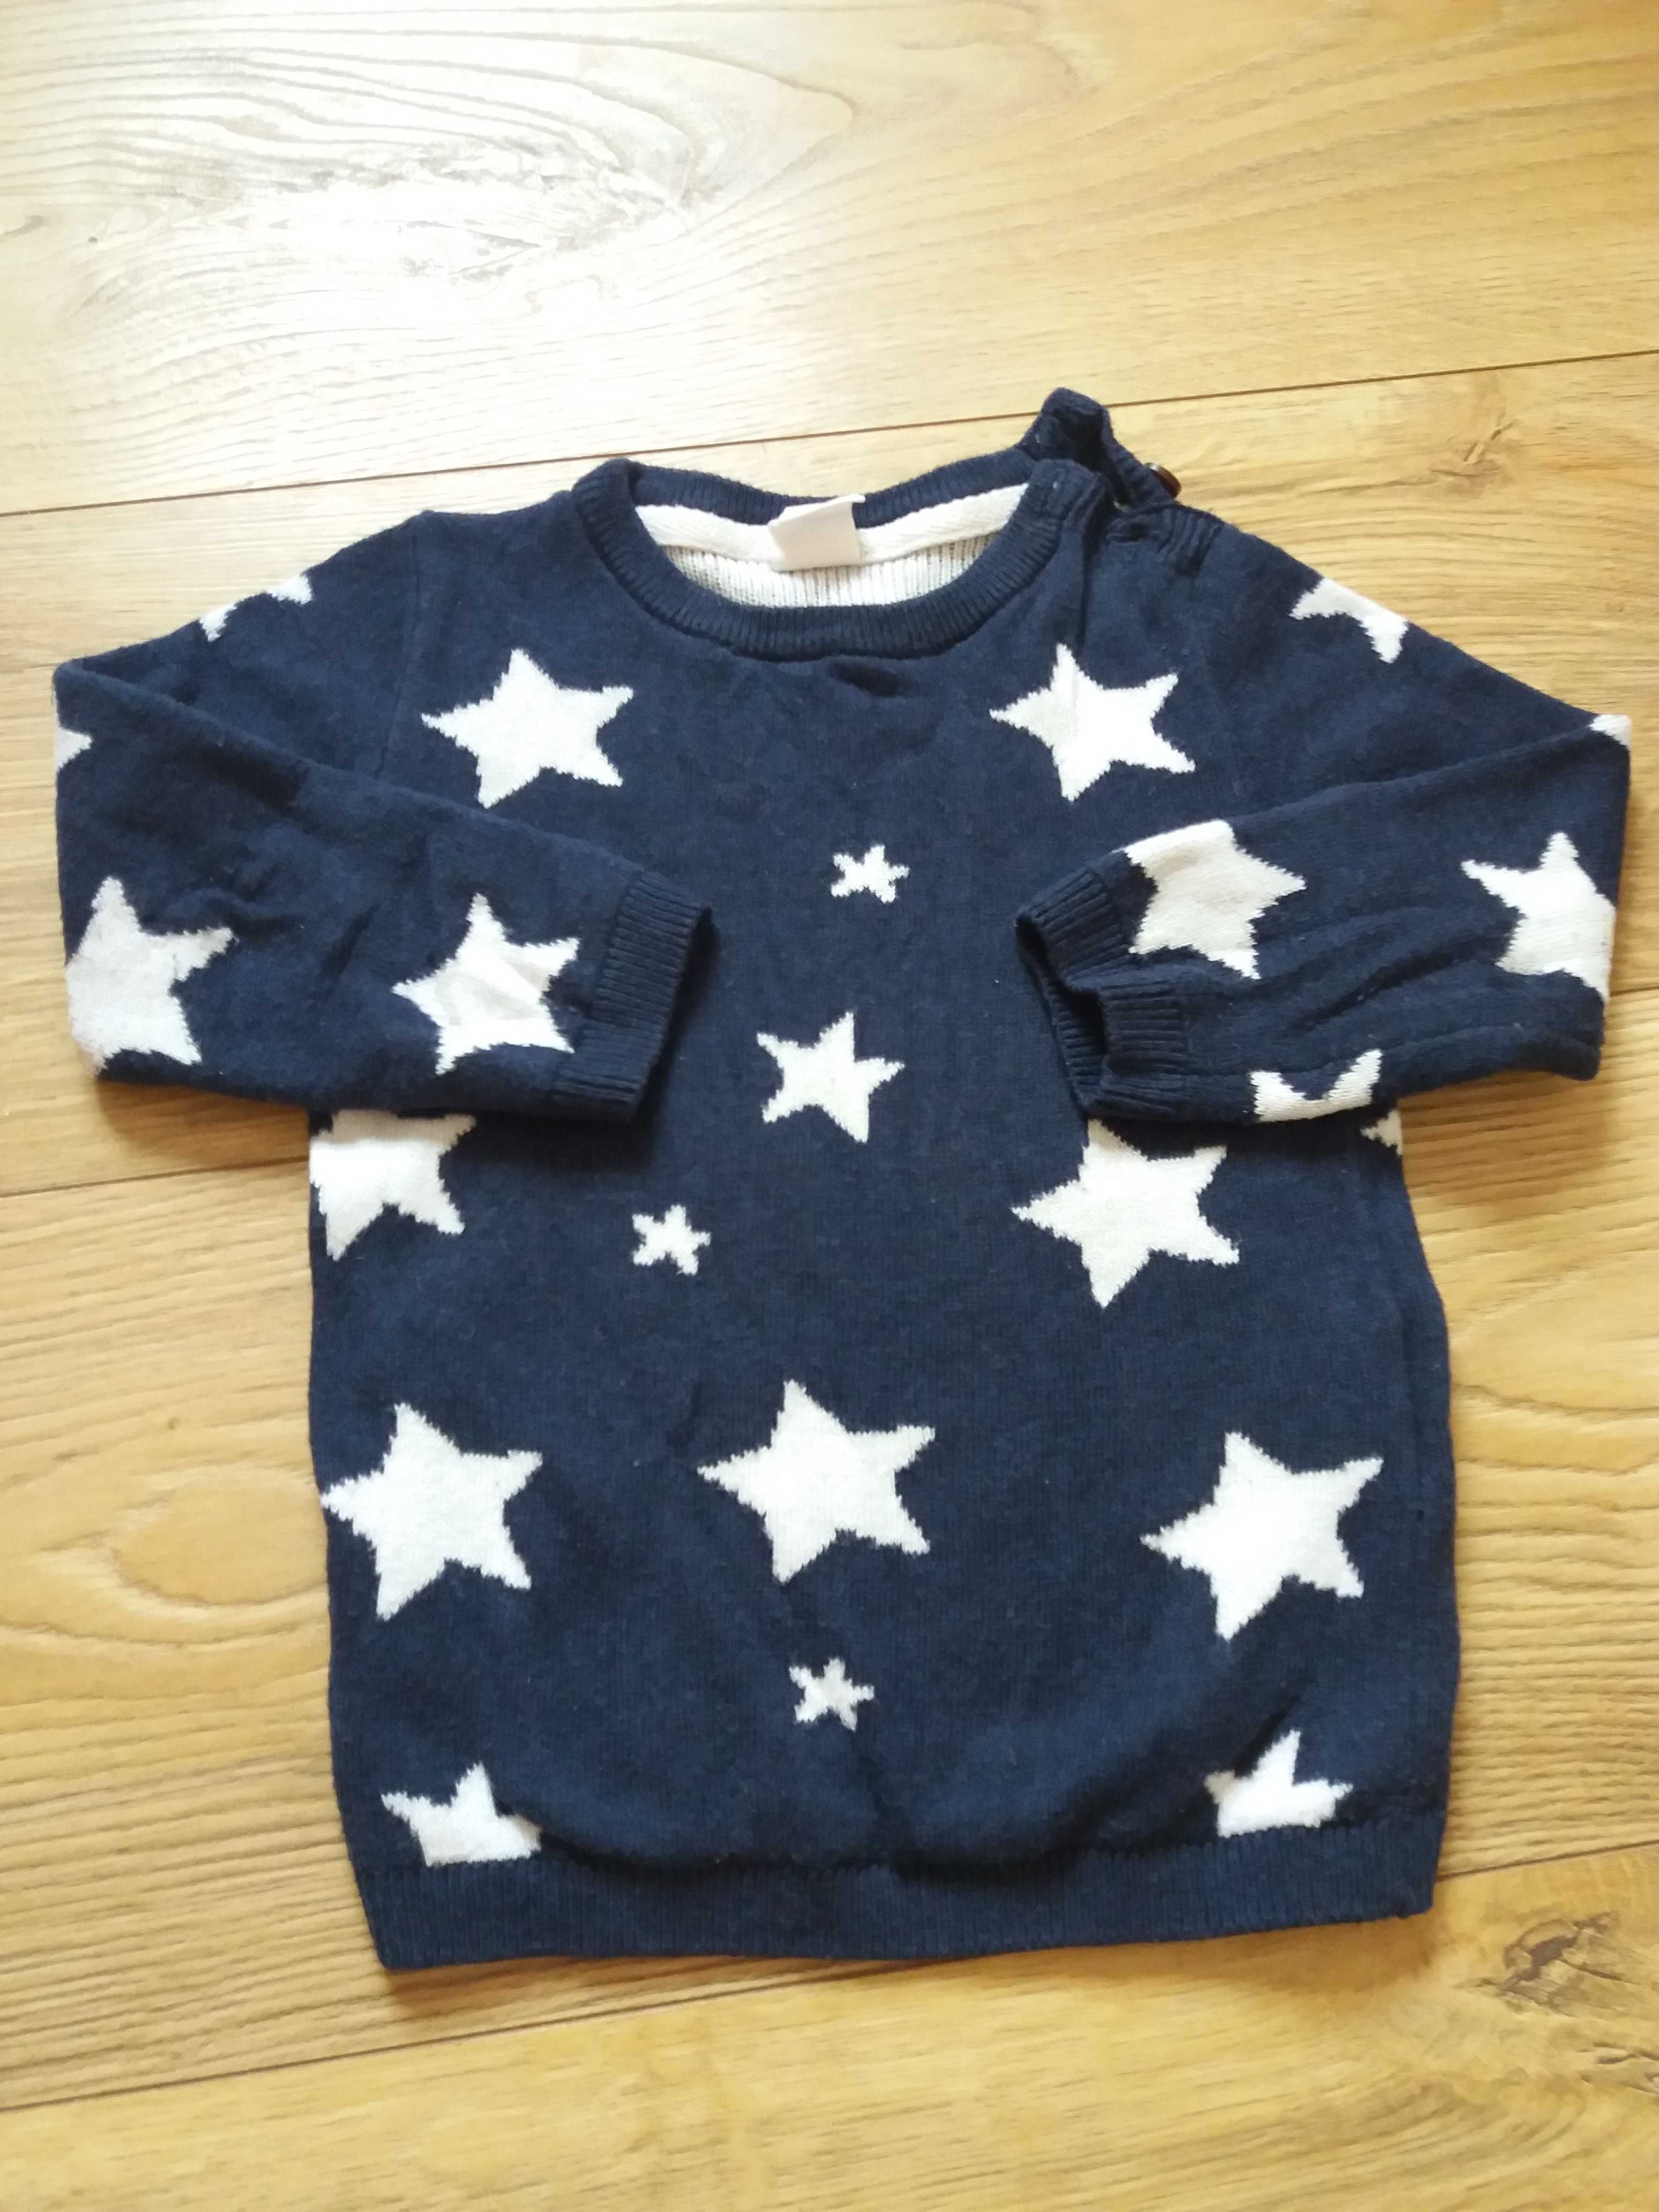 H&M sweterek dla chłopca w gwiazdki r. 80